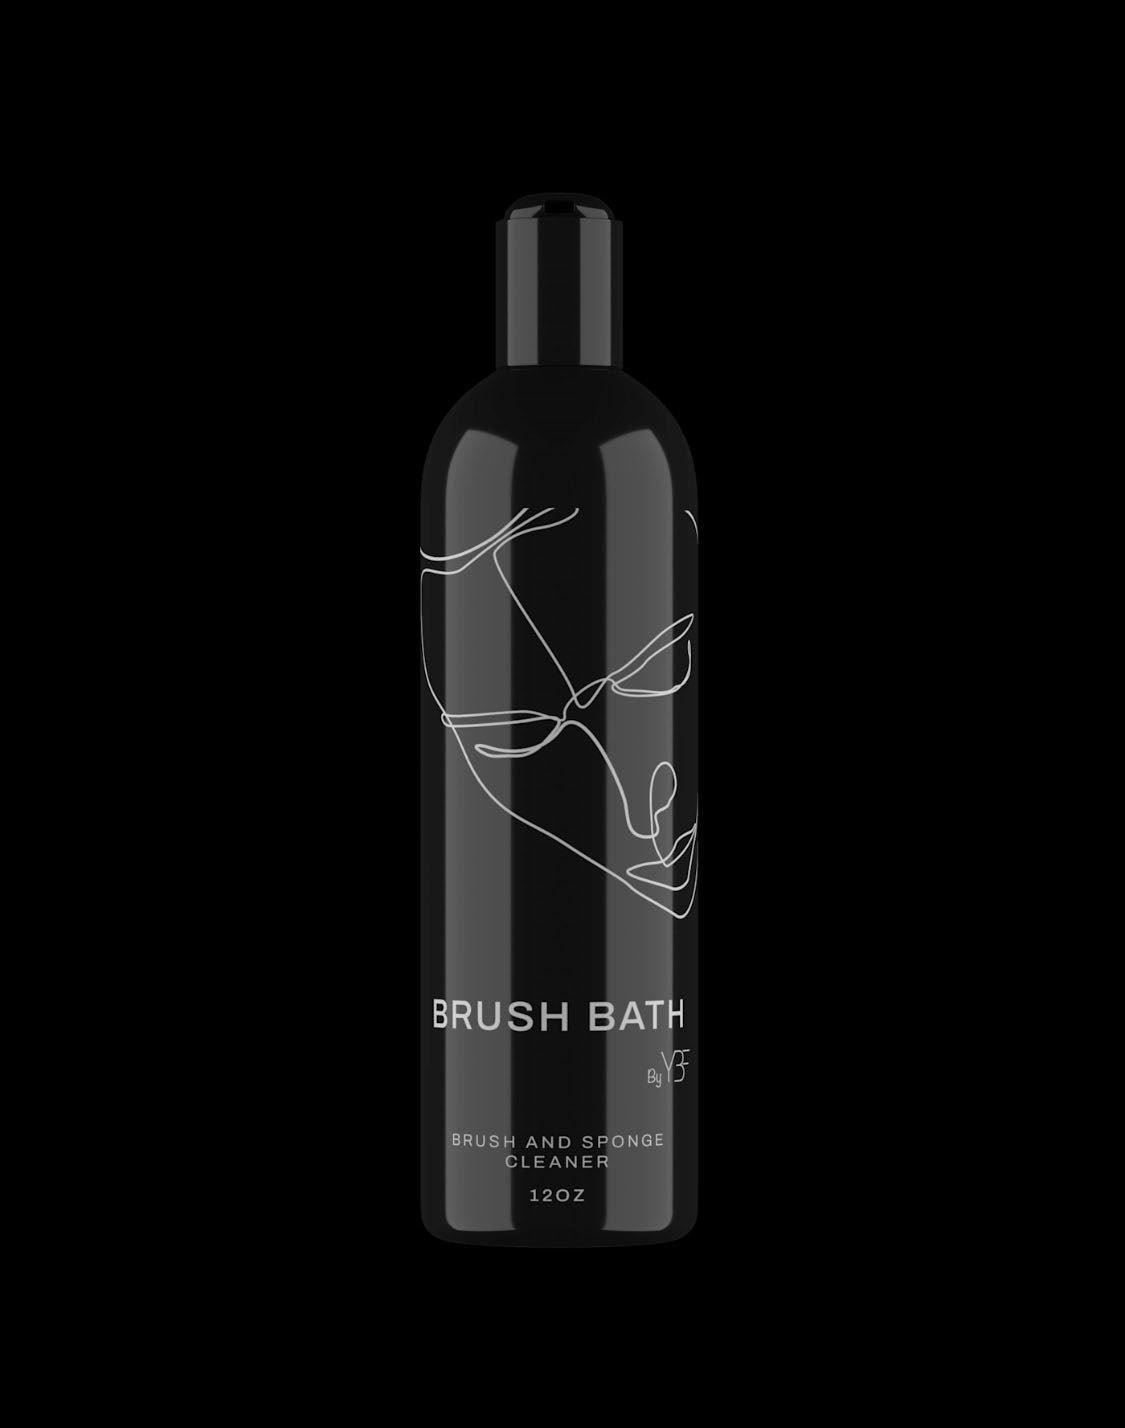 Brush Bath by YBF